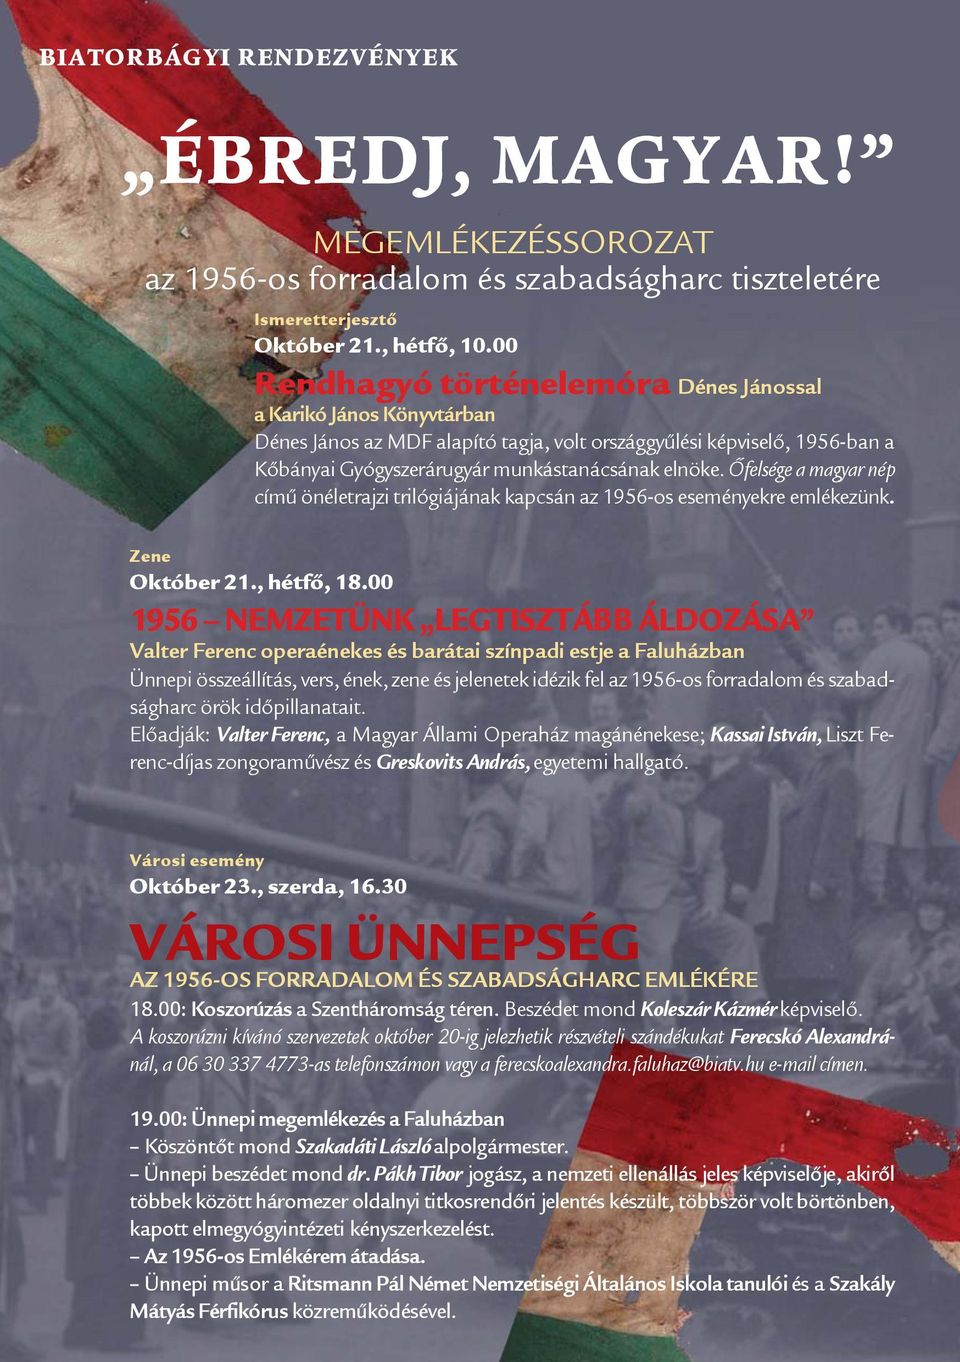 Őfelsége a magyar nép című önéletrajzi trilógiájának kapcsán az 1956-os eseményekre emlékezünk. Zene Október 21., hétfő, 18.